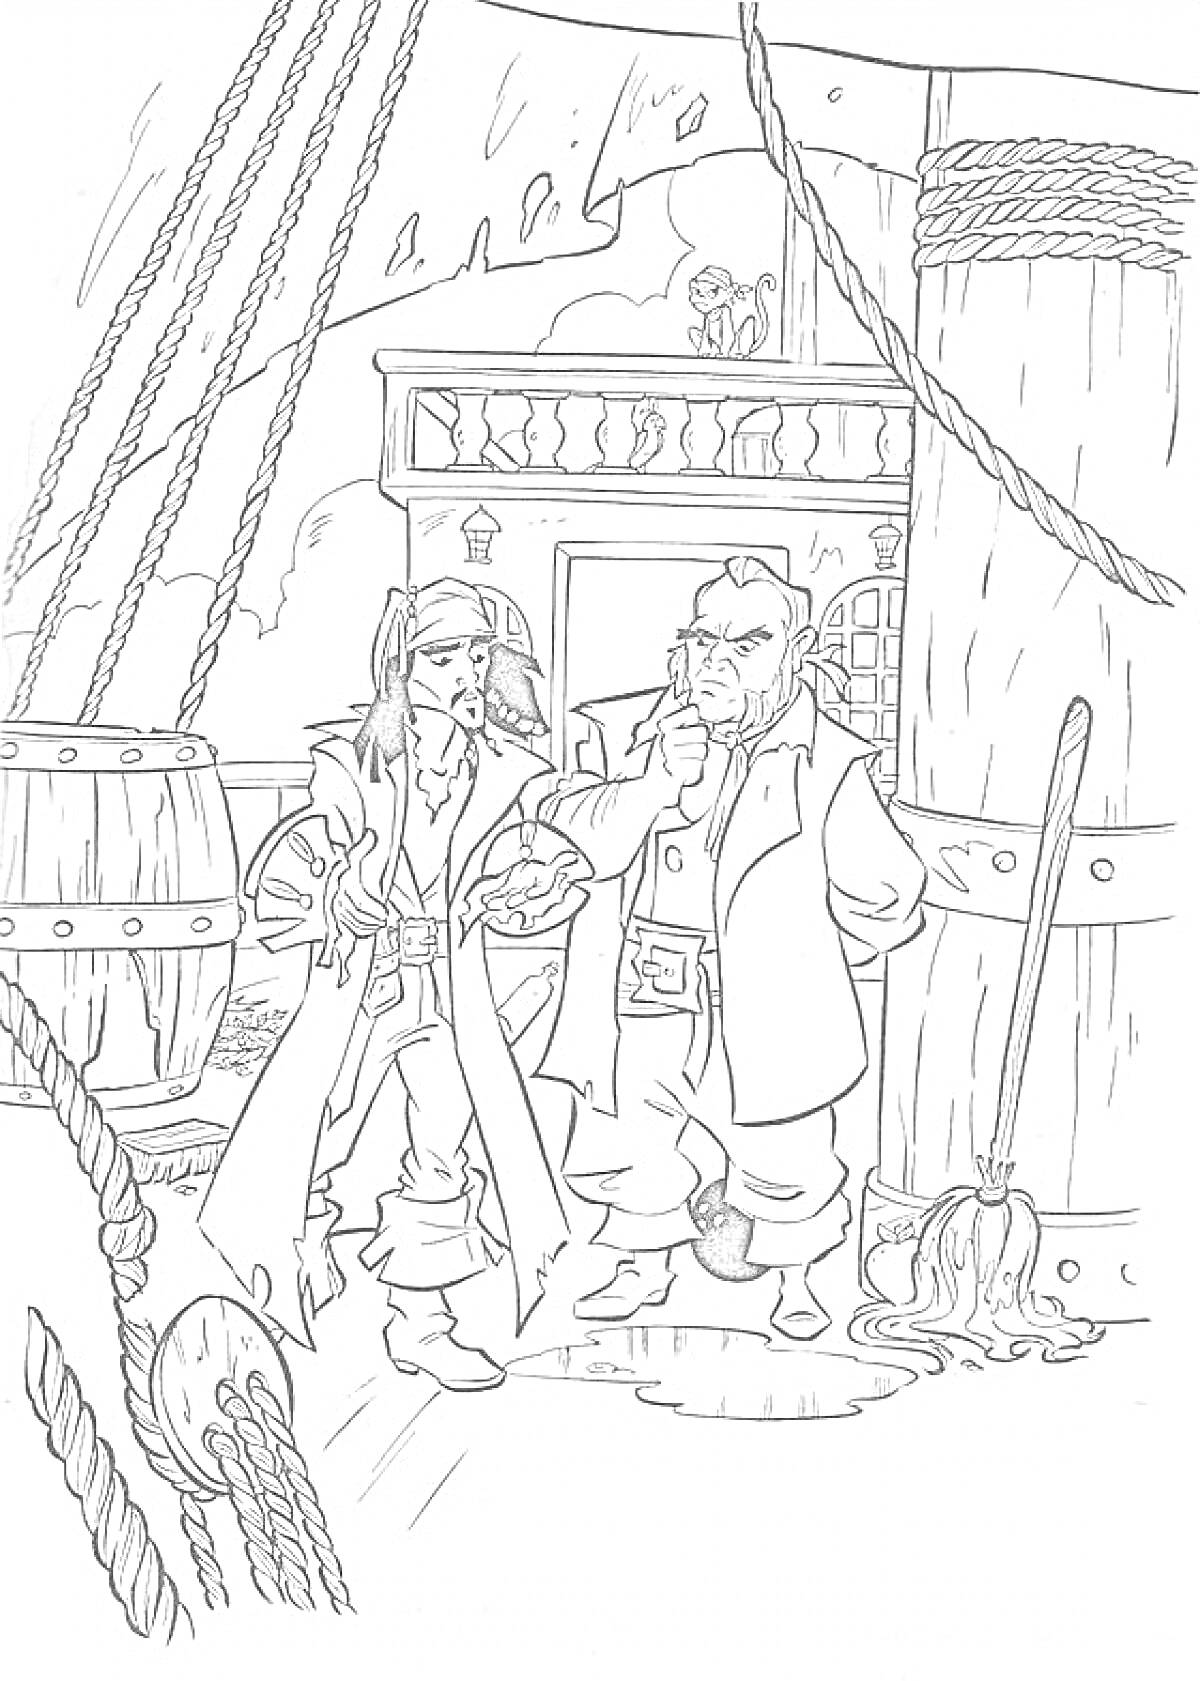 Два пирата на палубе корабля с деревянной бочкой, шваброй, канатами и каютой на заднем плане.